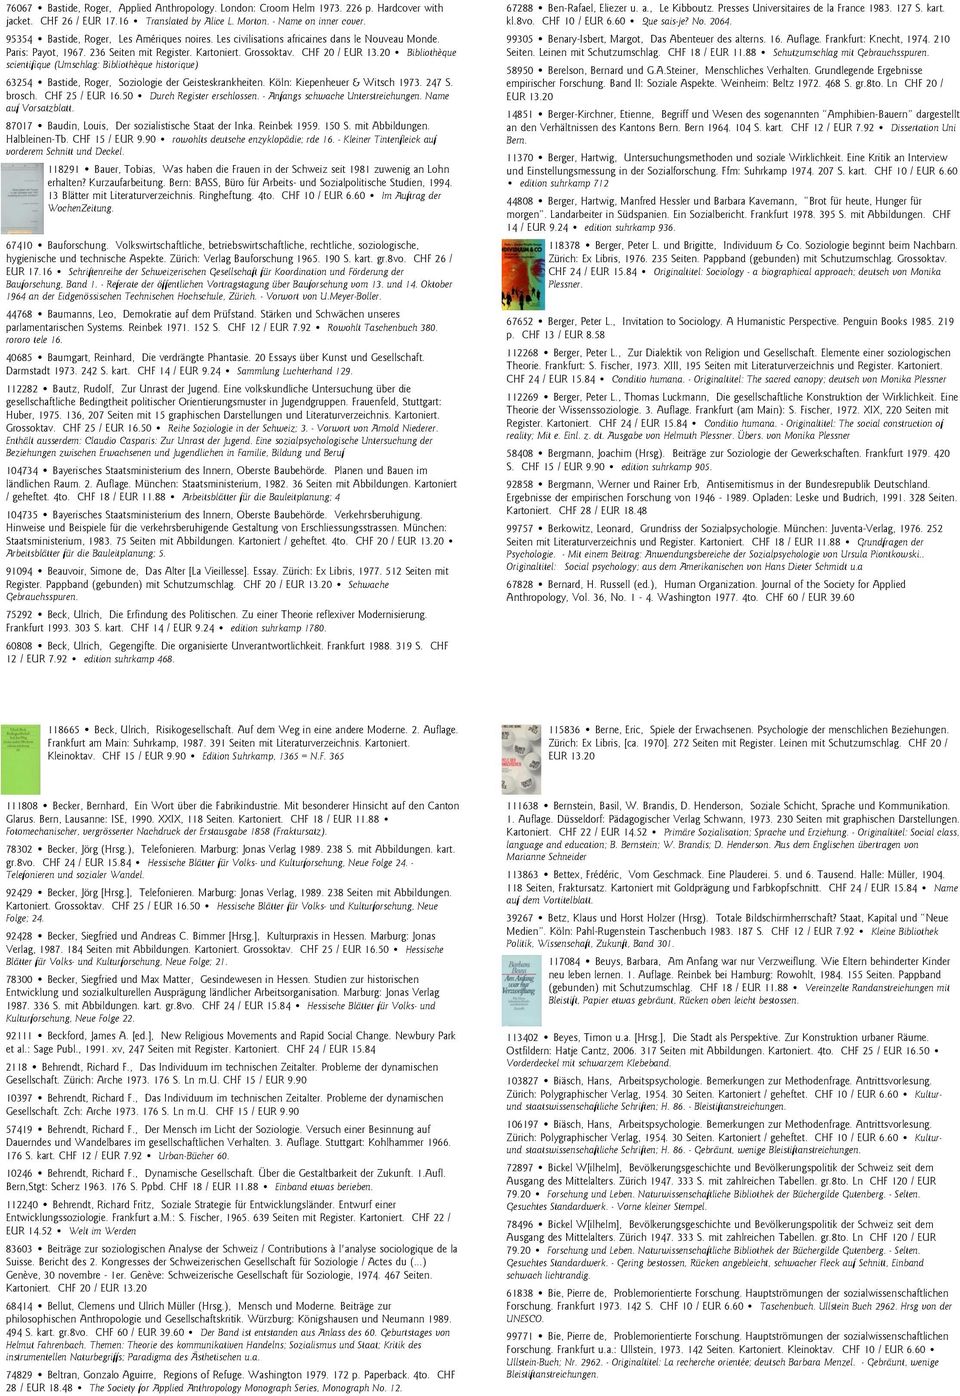 20 Bibliothèque scientifique (Umschlag: Bibliothèque historique) 63254 Bastide, Roger, Soziologie der Geisteskrankheiten. Köln: Kiepenheuer & Witsch 1973. 247 S. brosch. CHF 25 / EUR 16.